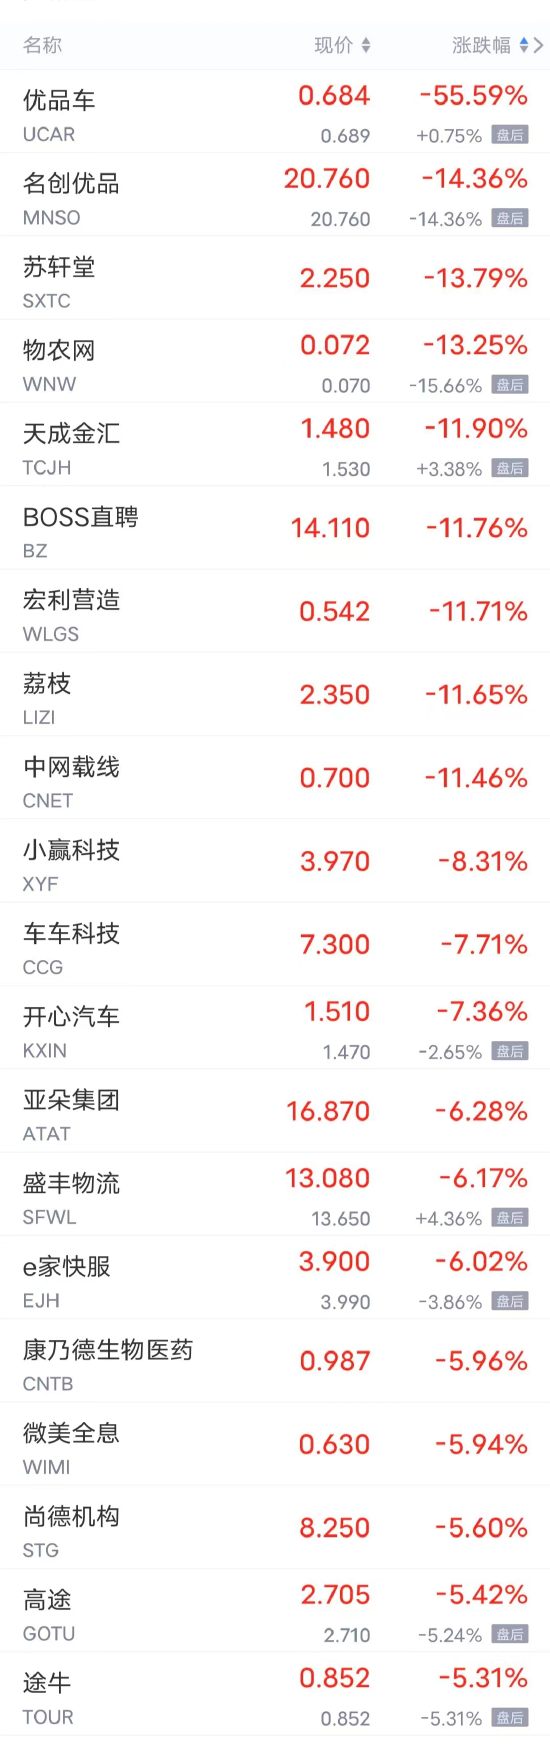 周一热门中概股多数下跌 网易跌超4%，富途控股跌超3%，百度、京东跌超2%